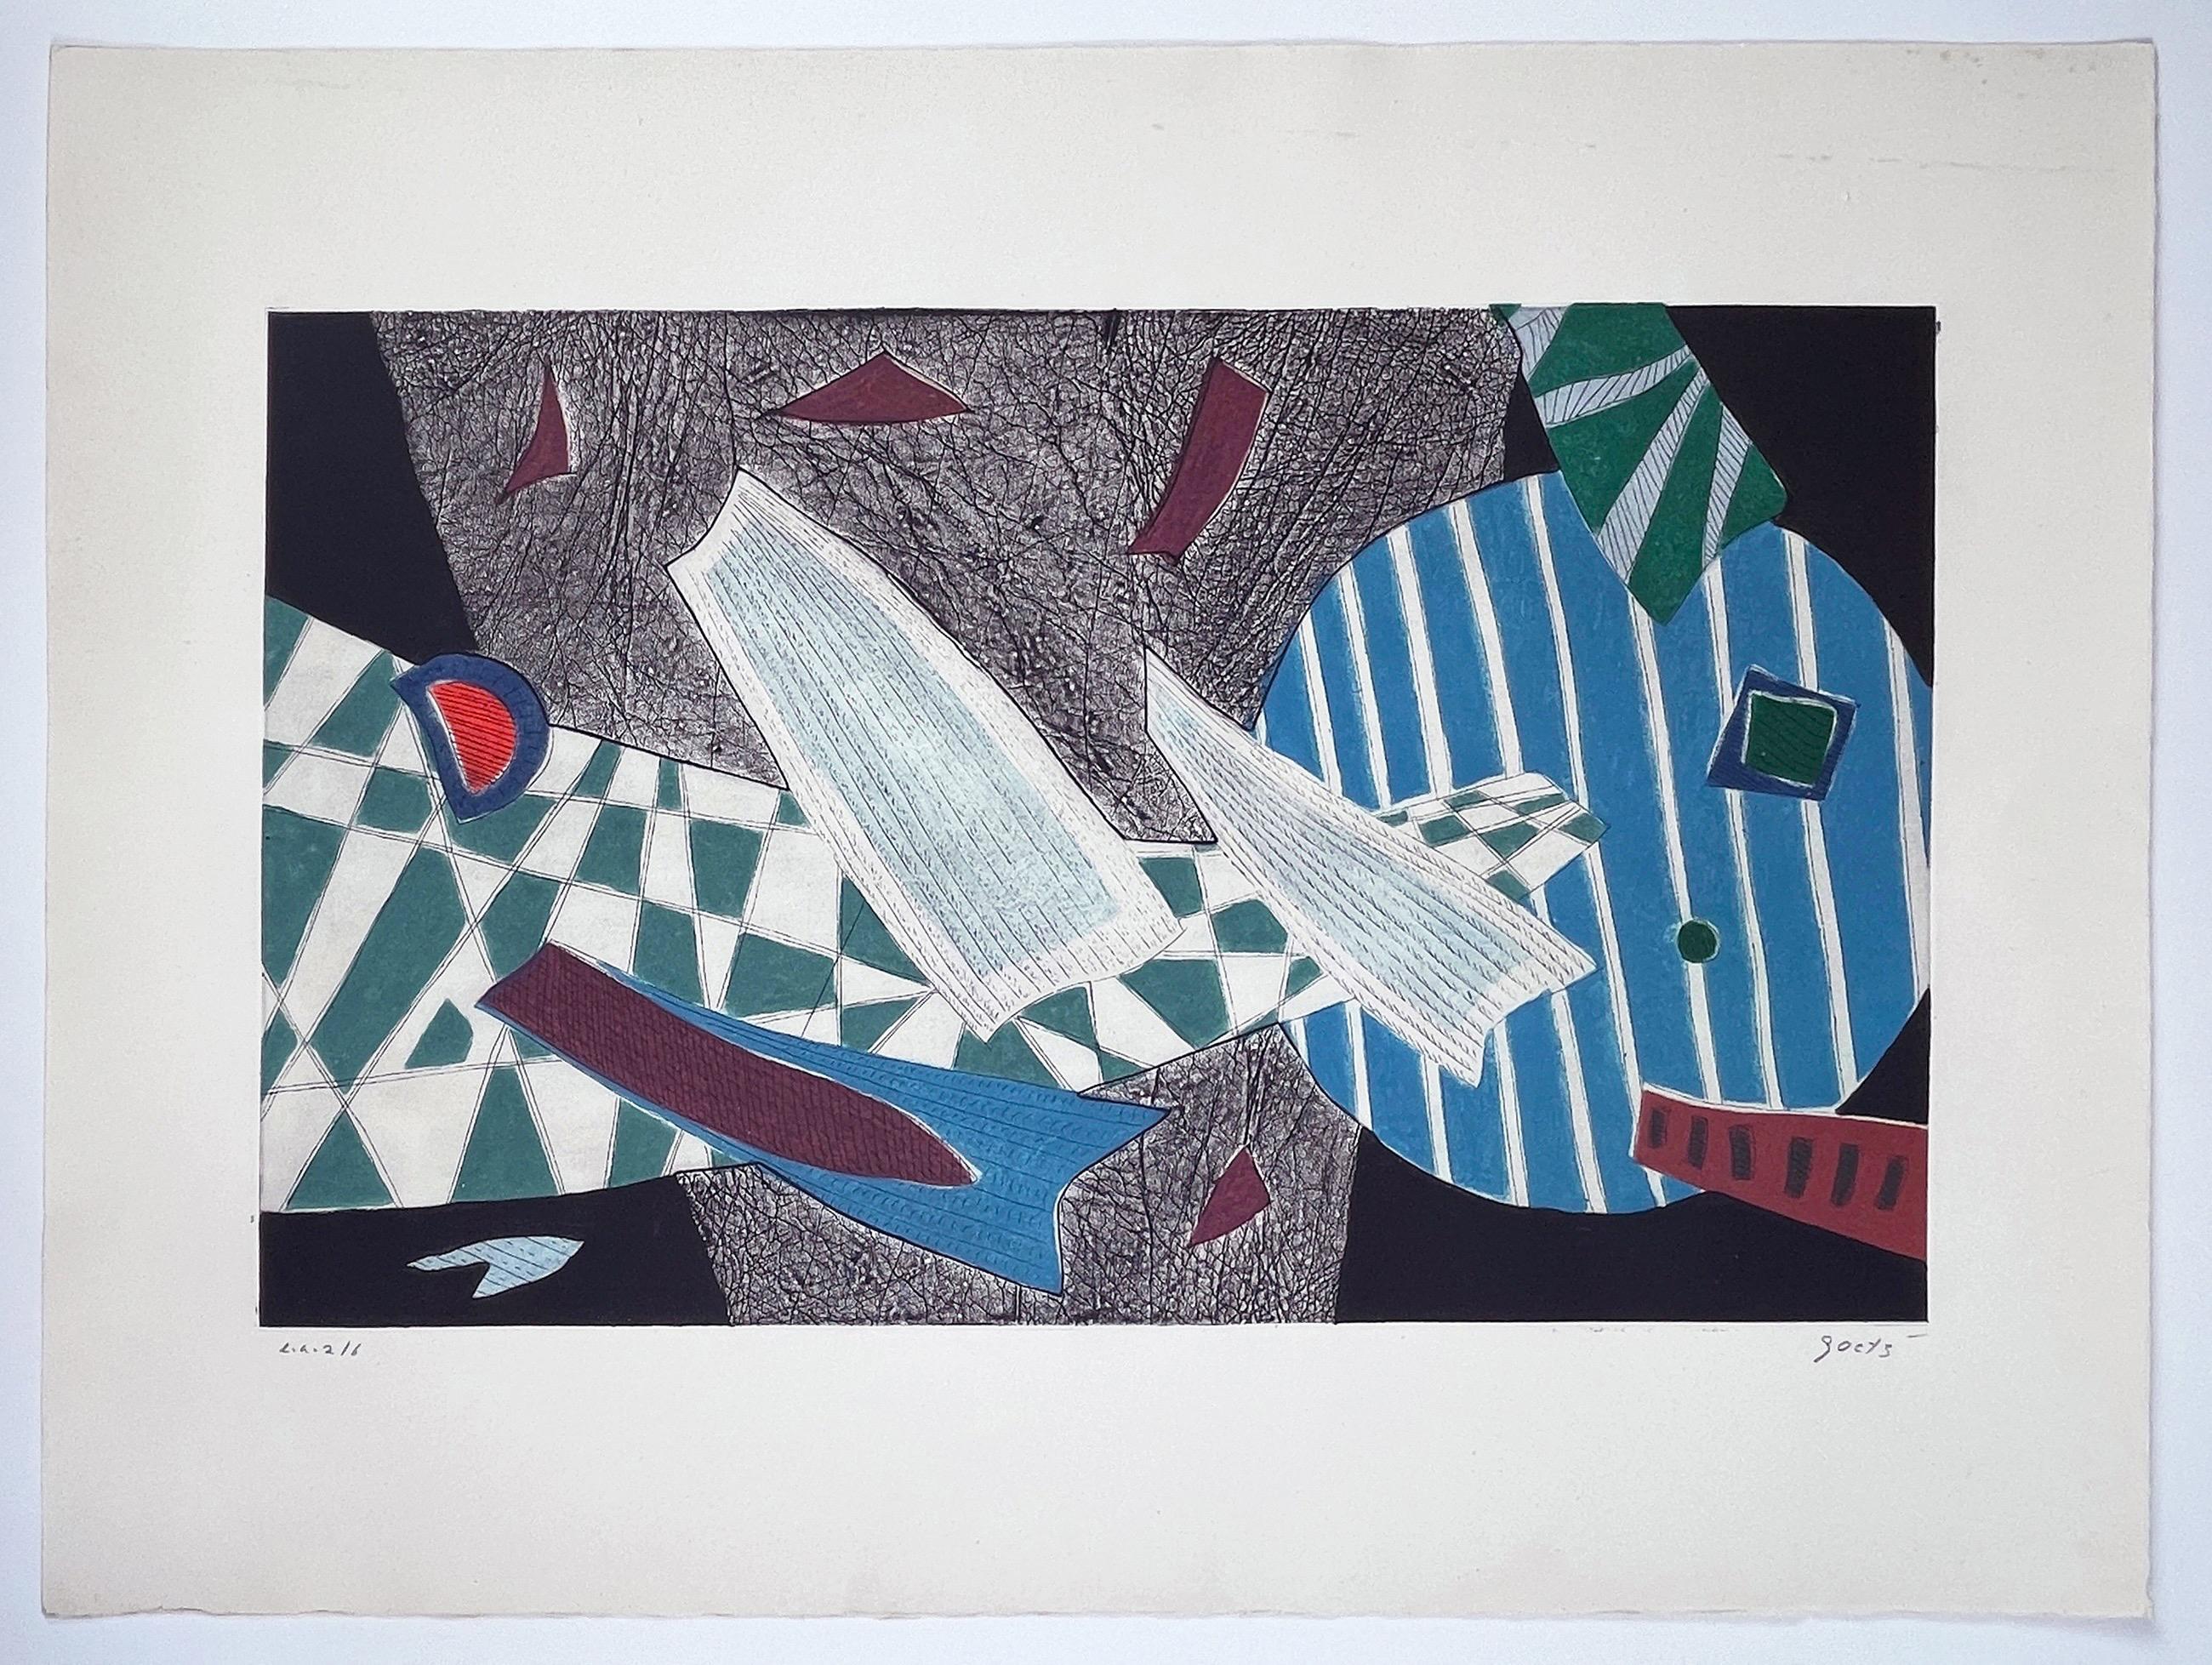 Suite de quatre tirages d'Henri Goetz, abstrait, géométrique et surréaliste coloré